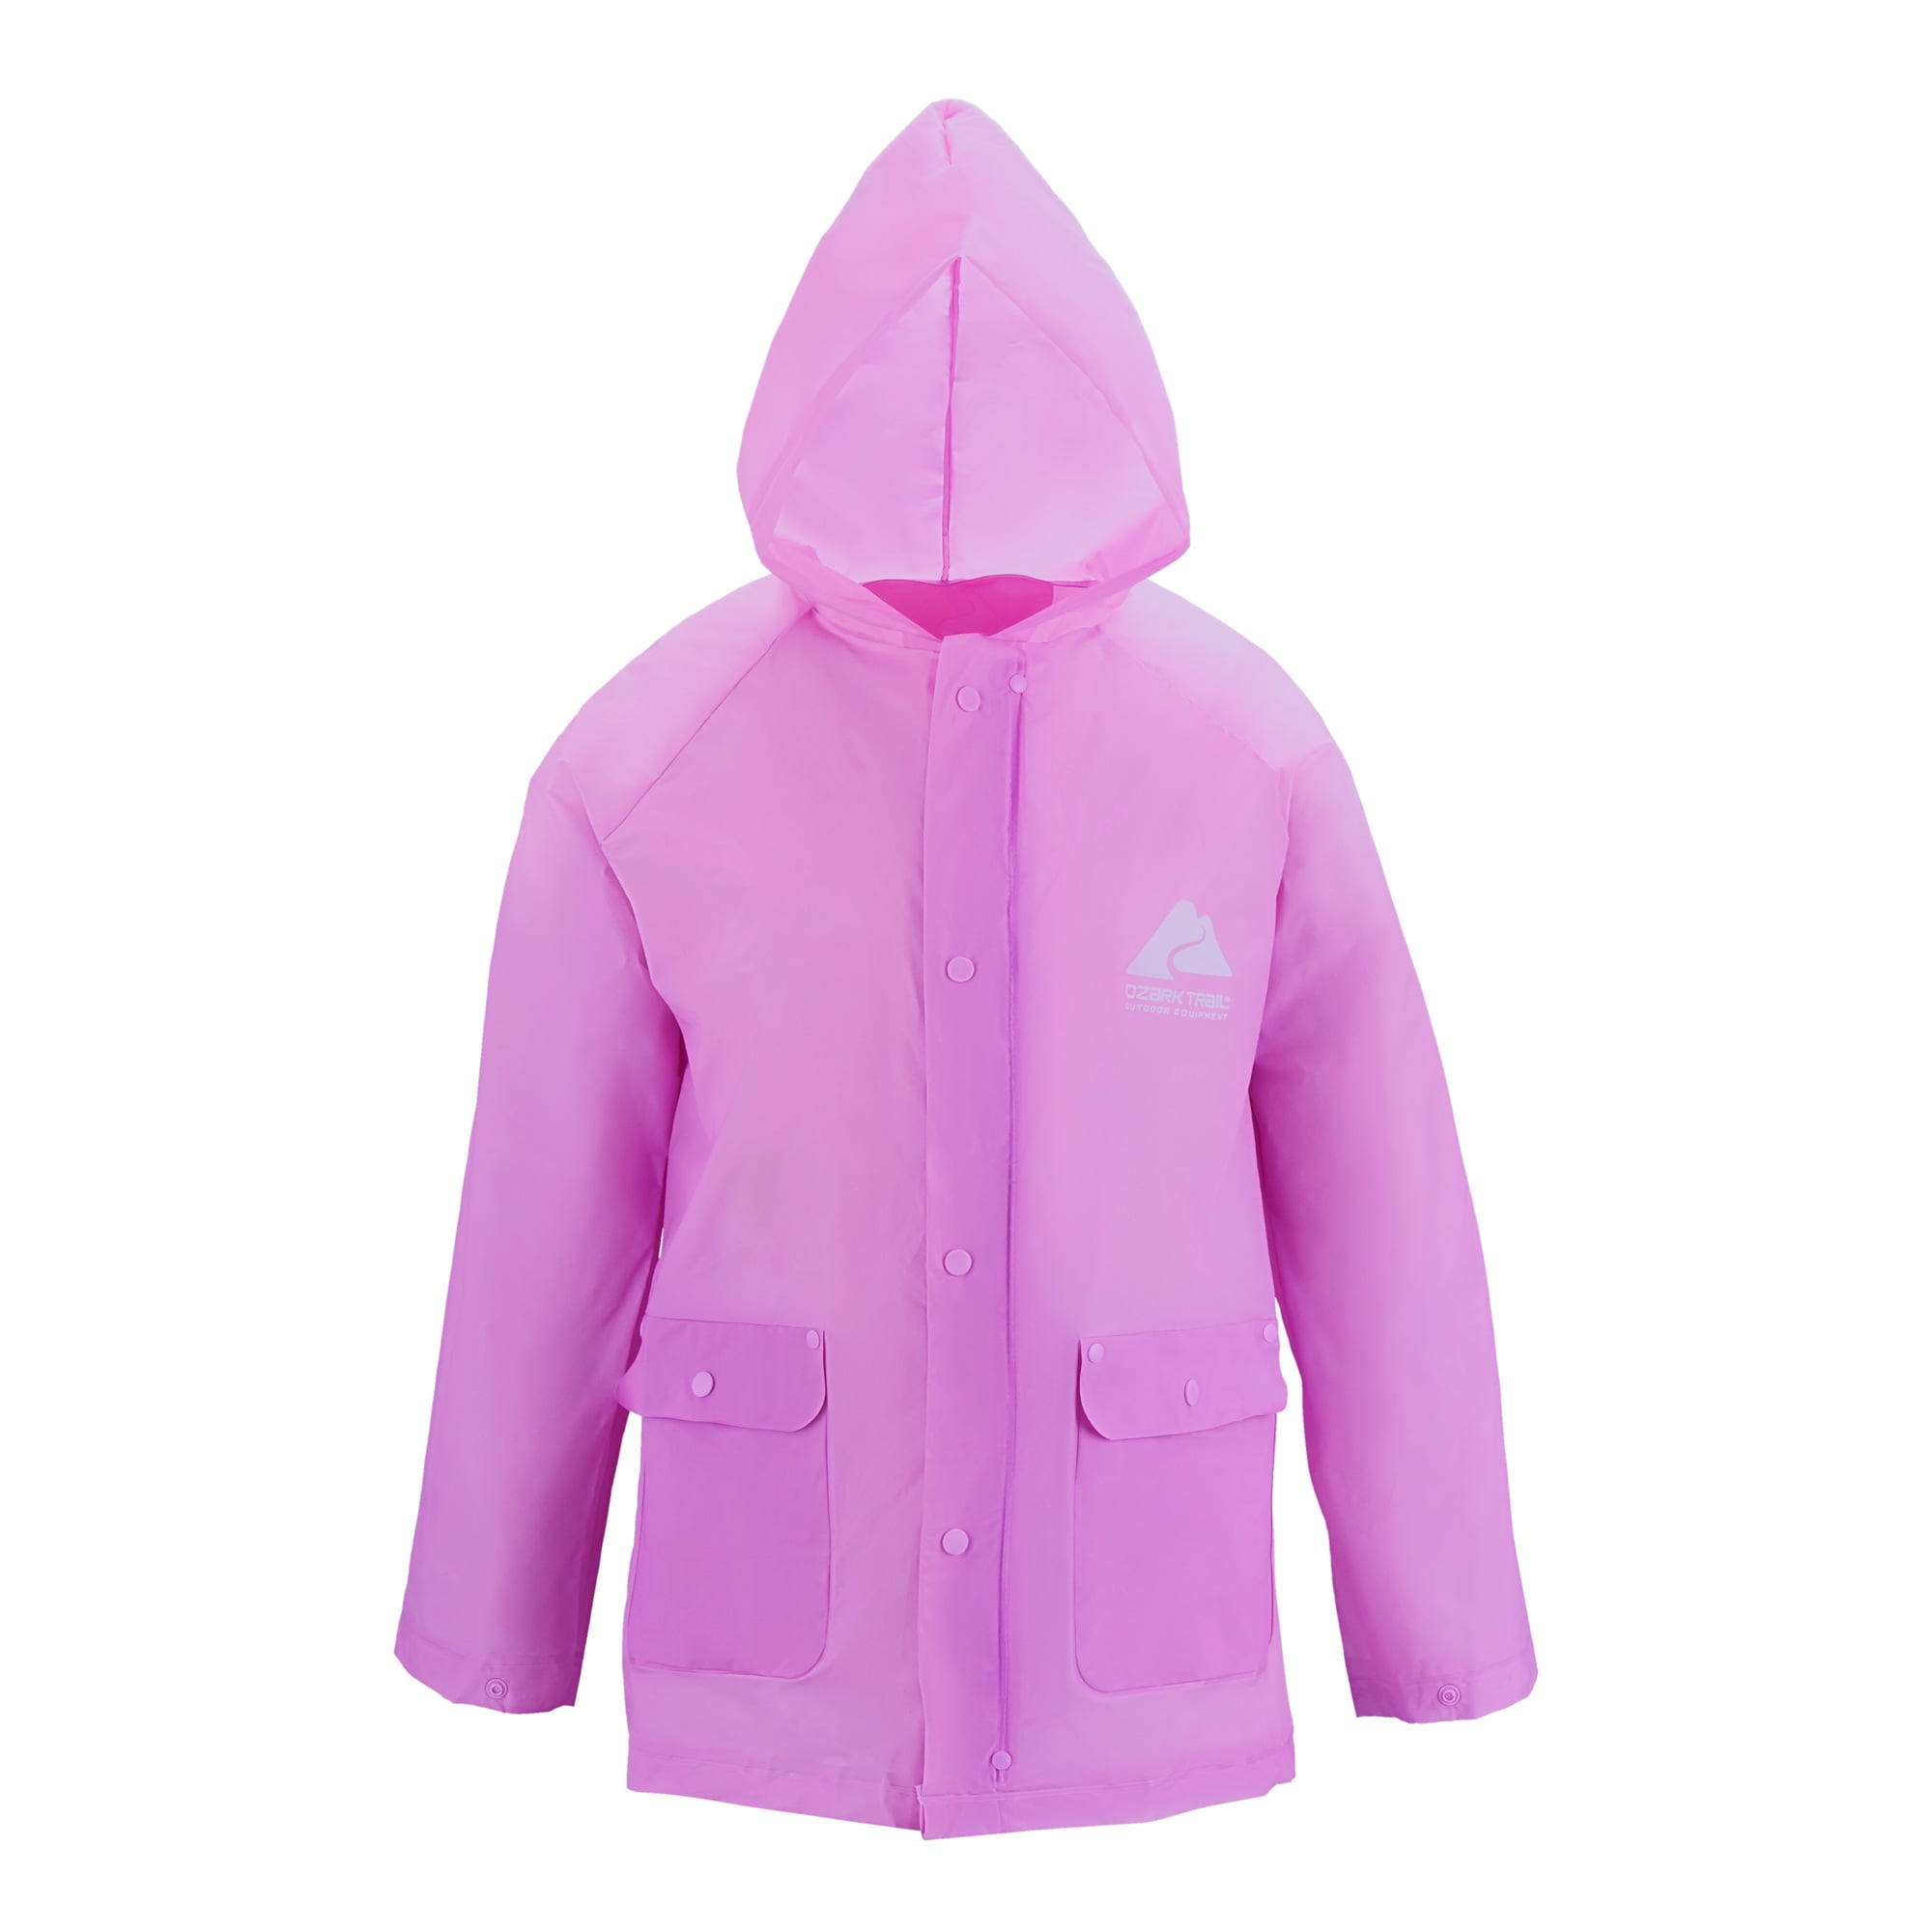 Ozark Trail Child Eva Lightweight Rainwear Jacket, Large/XL, Purple